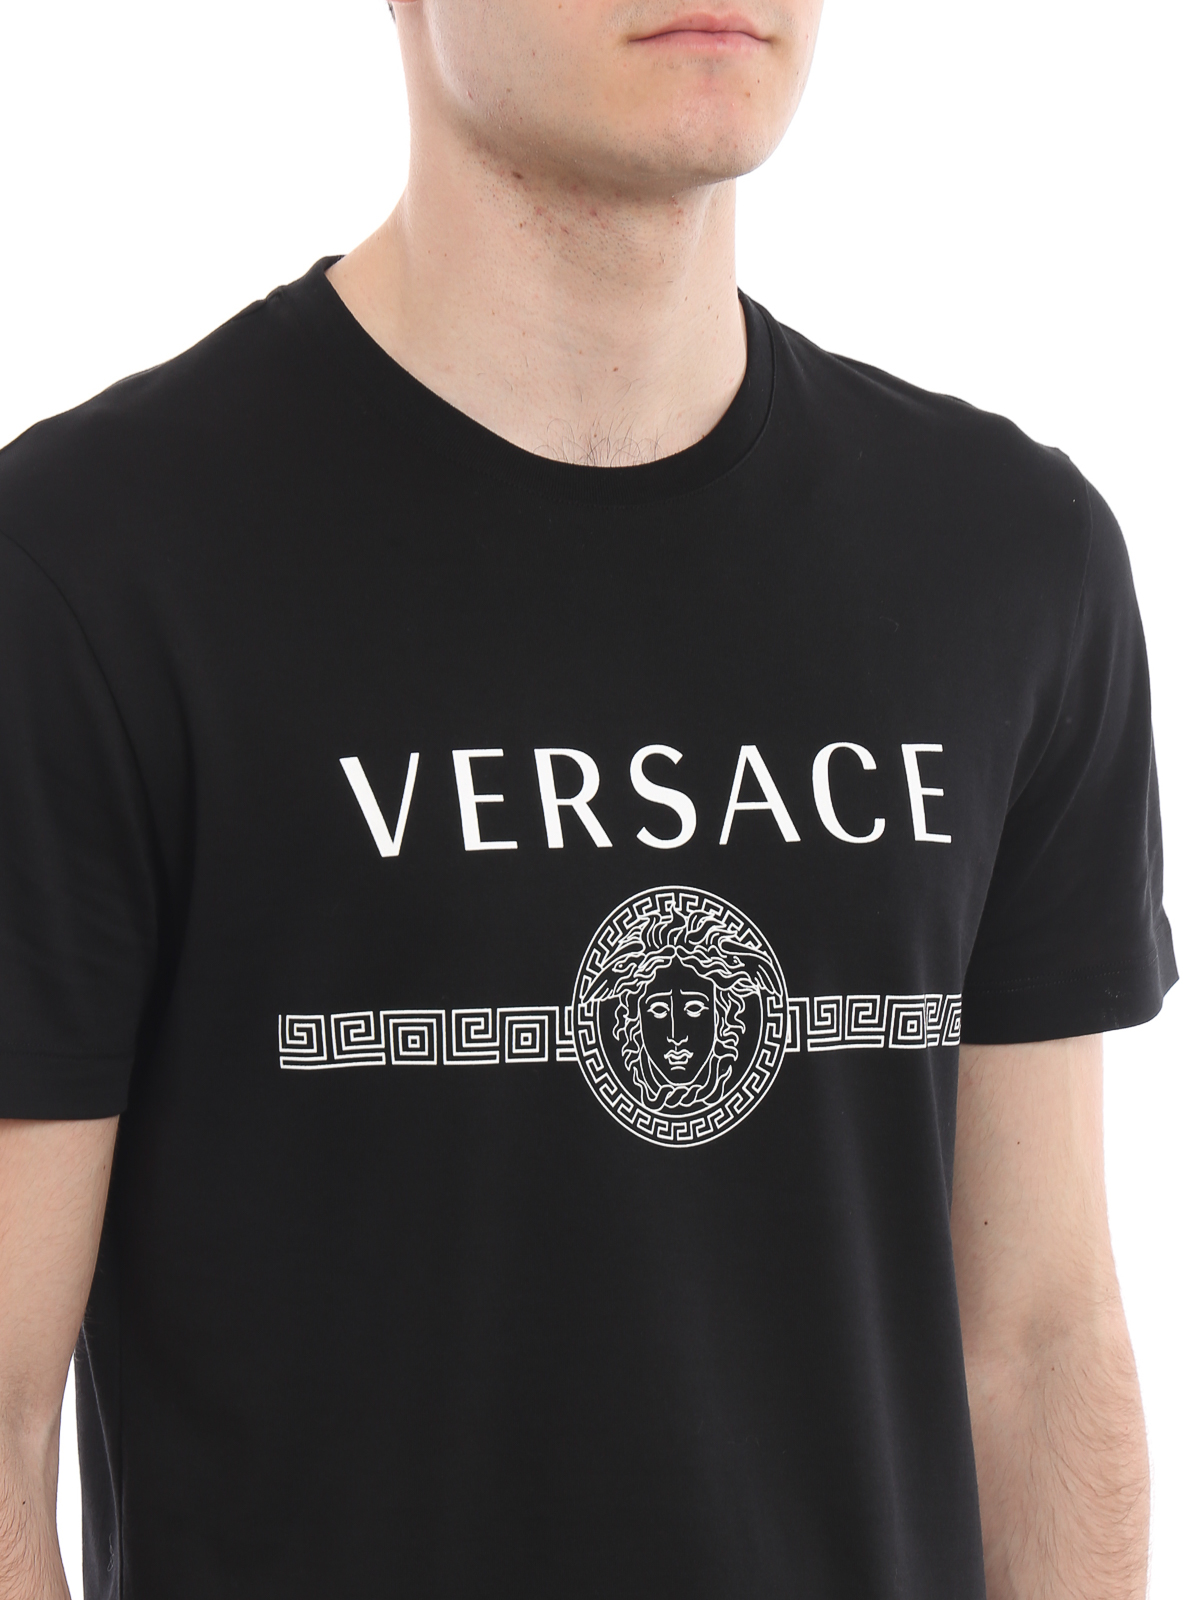 versace t shirt medusa head